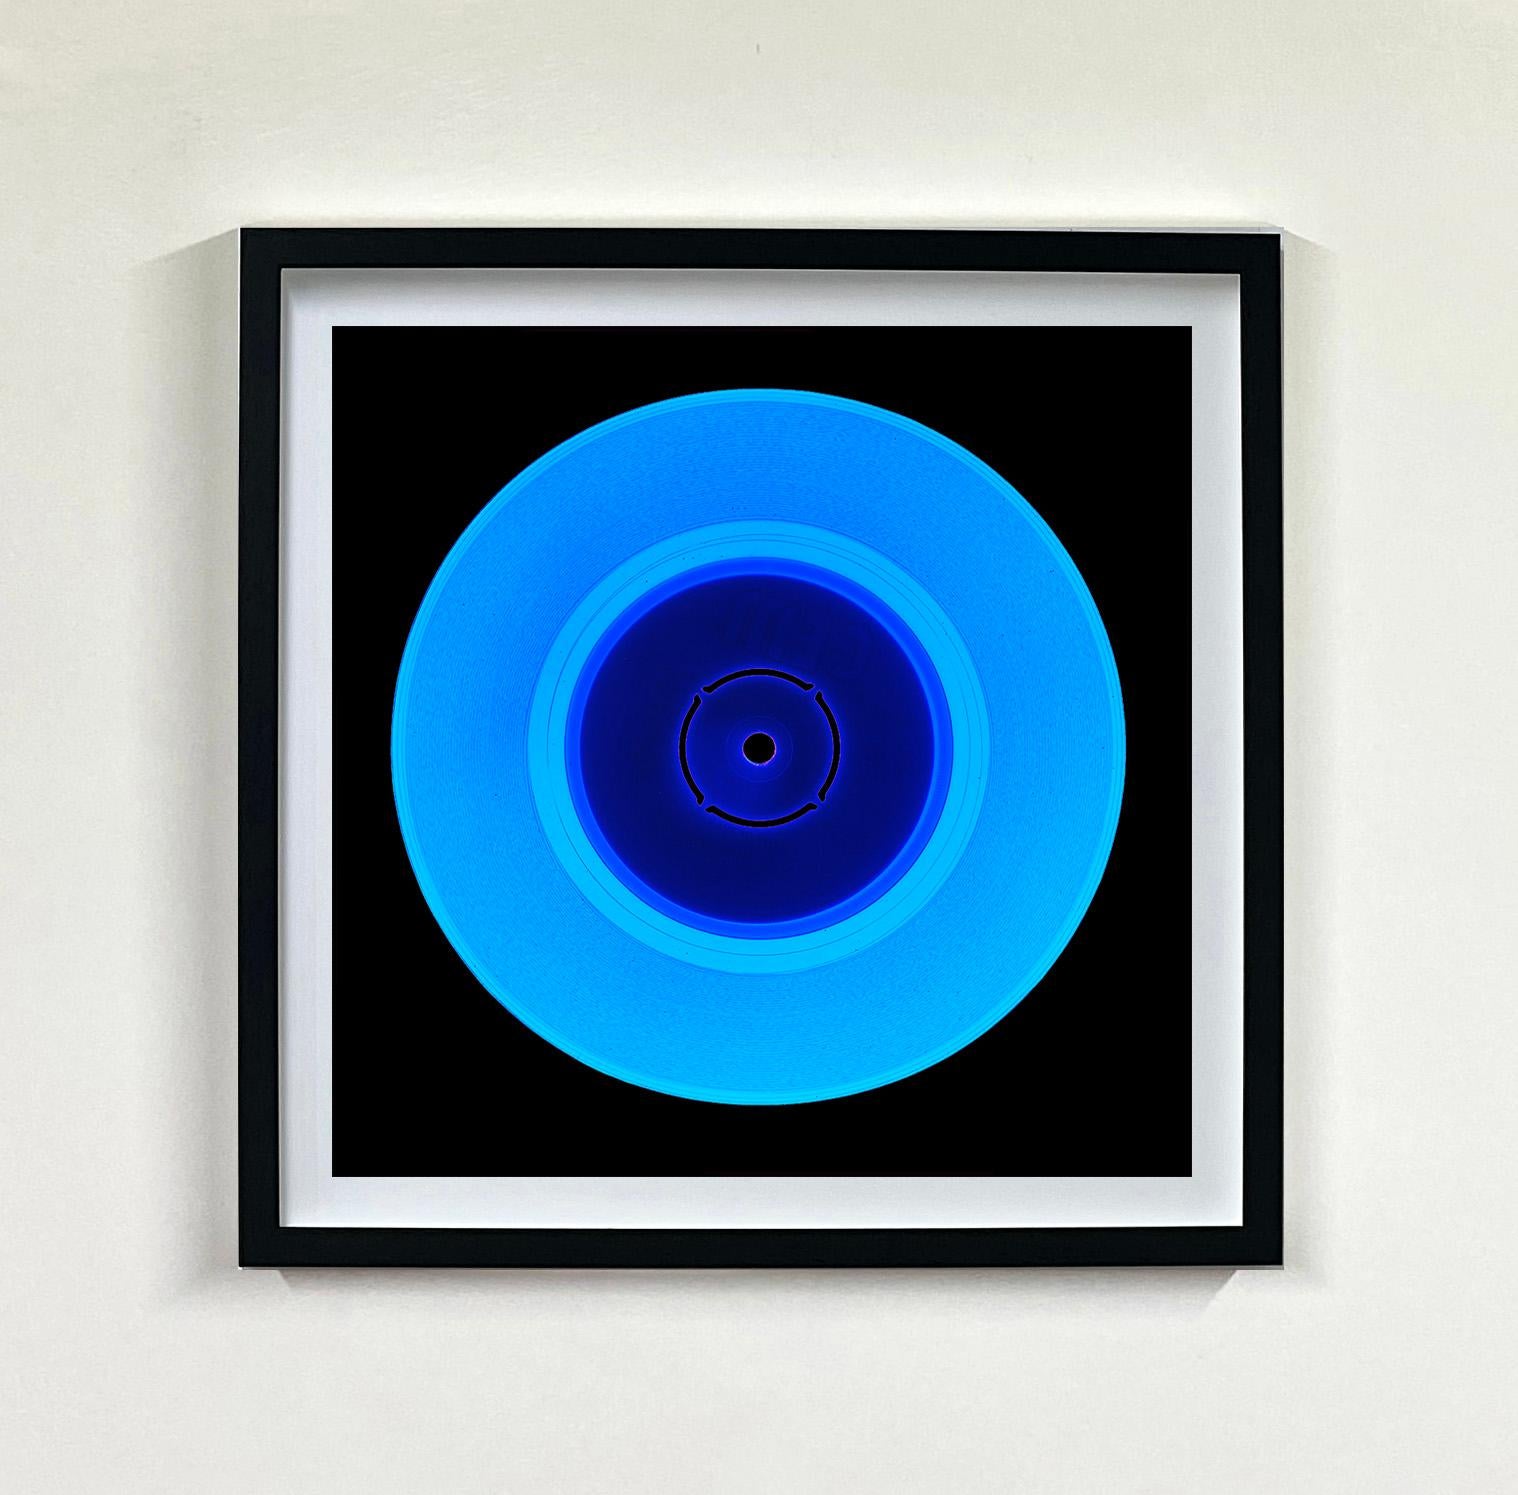 Heidler & Heeps Vinyl Collection Sechzehn Stück Multicolor Square Installation.
Die renommierten zeitgenössischen Fotografen Richard Heeps und Natasha Heidler haben für diese wunderschöne, faszinierende Kollektion zusammengearbeitet. Ein Fest der